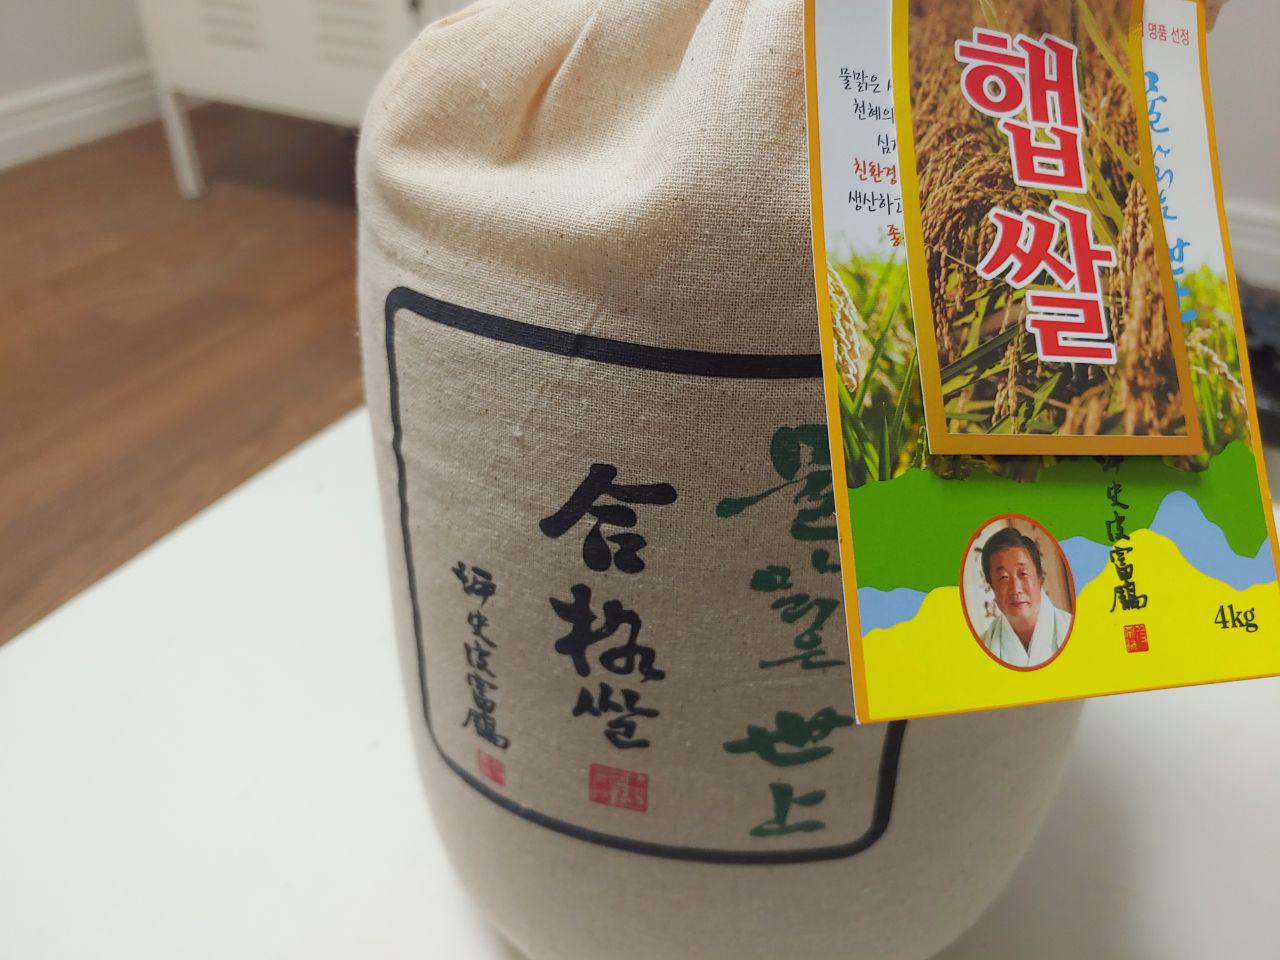 [MARKET] 임금 진상 쌀처럼 참 맛있는 합격쌀 및 잣누룽지 구매 후기